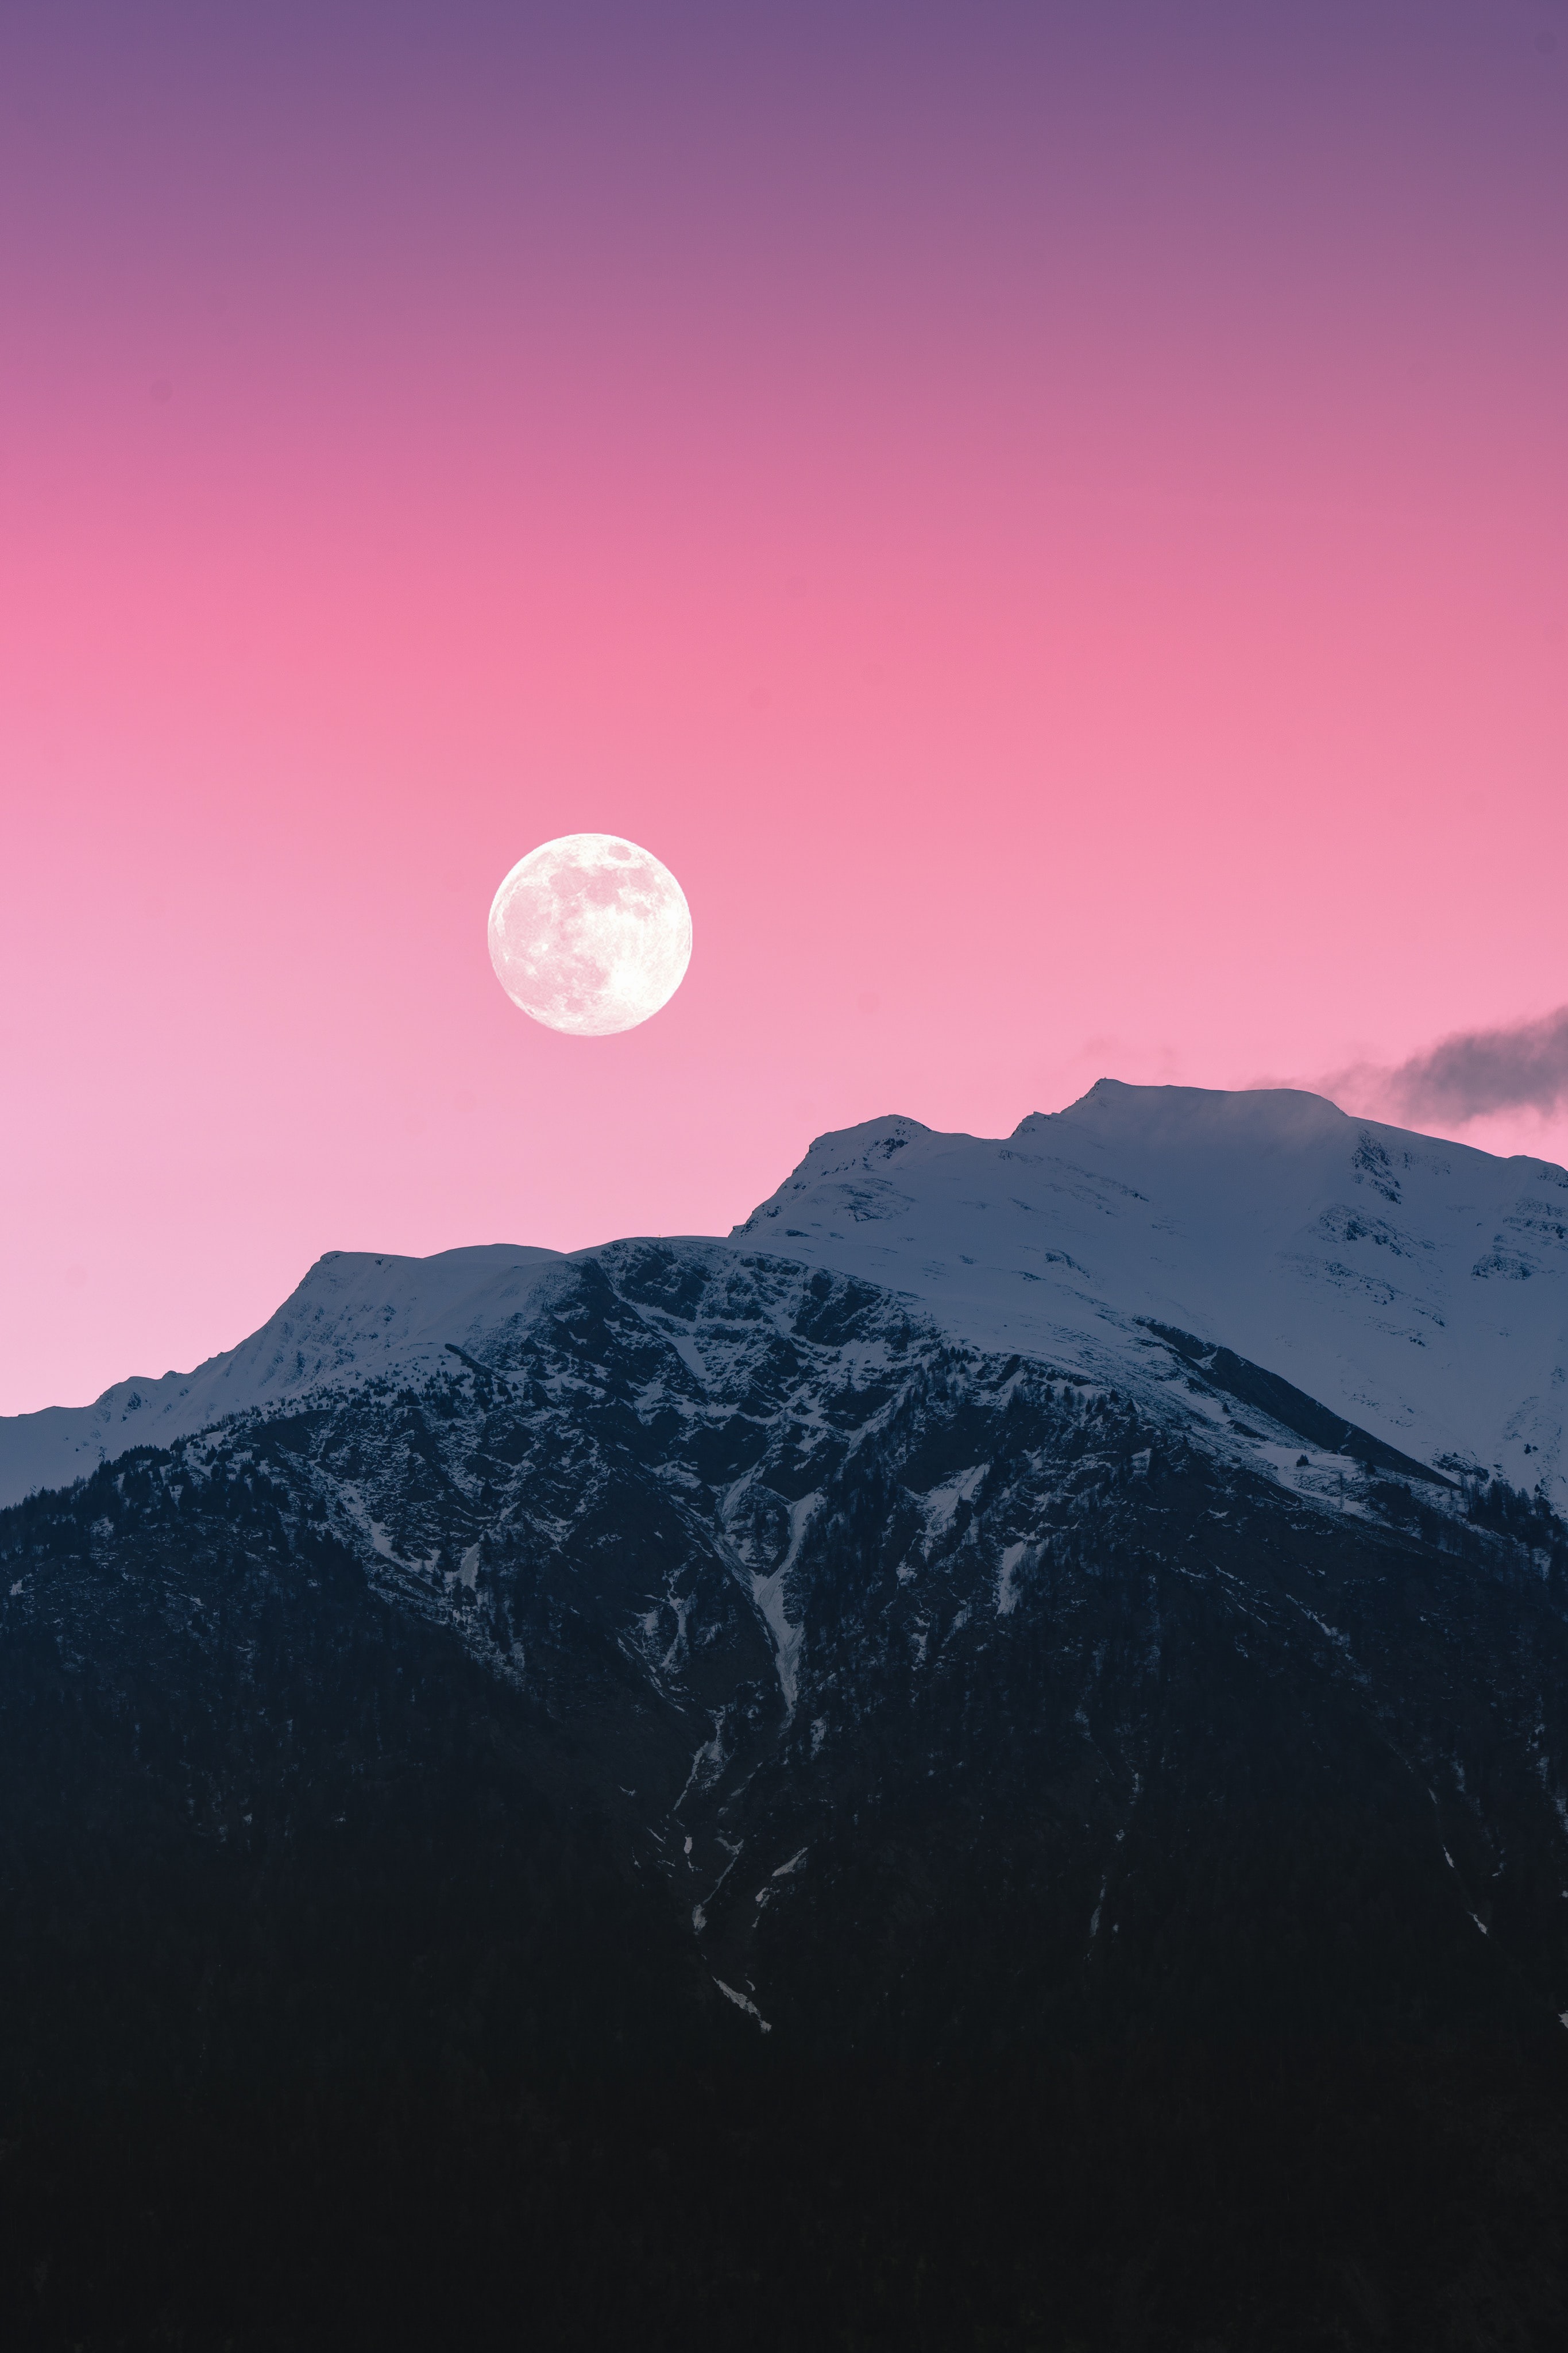 Скачать обои бесплатно Скалы, Заснеженный, Снег, Горы, Луна, Природа, Розовый картинка на рабочий стол ПК